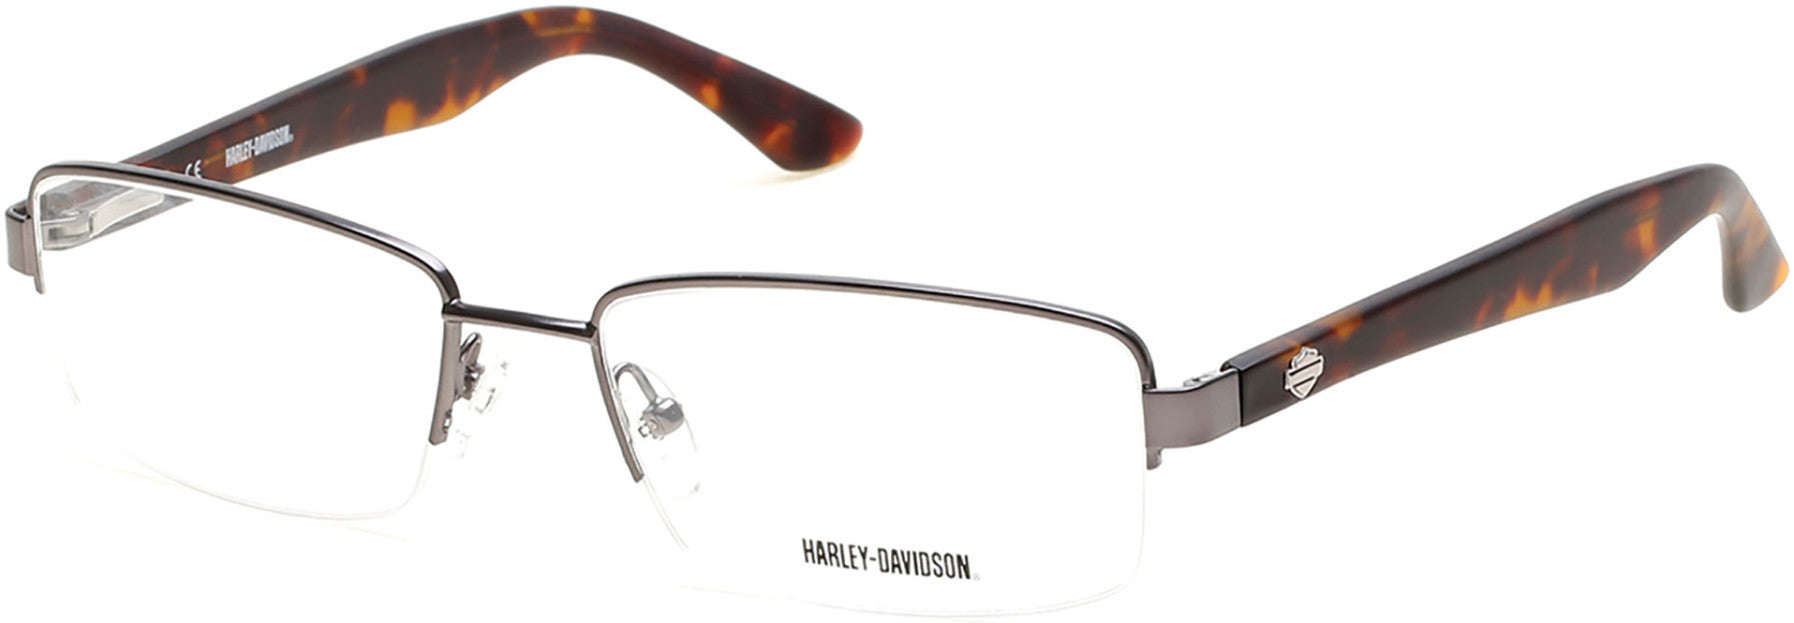 Harley-Davidson HD0731 Eyeglasses 008-008 - Shiny Gunmetal